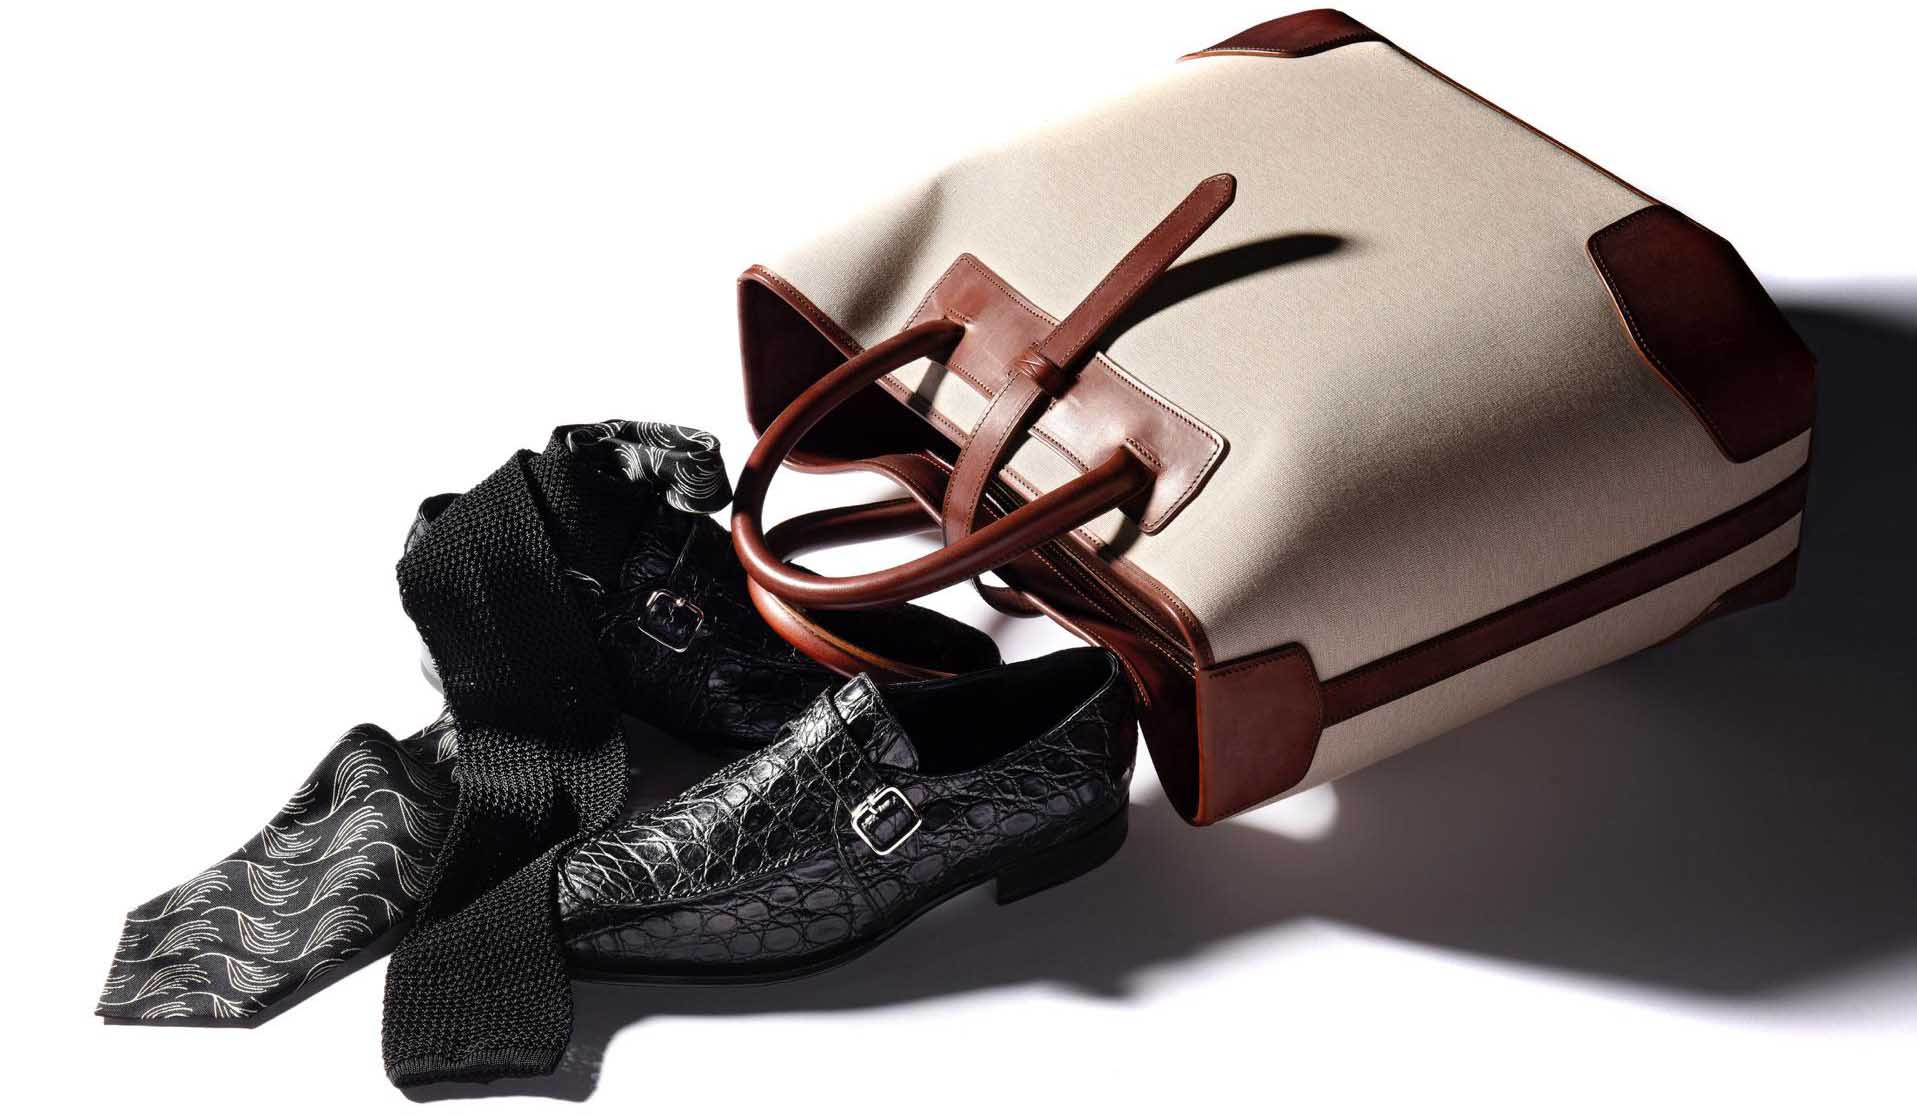 ジェームス パーディ&サンズの鞄、ニッキーとアットヴァンヌッチのタイ、エンツォボナフェのクロコ靴